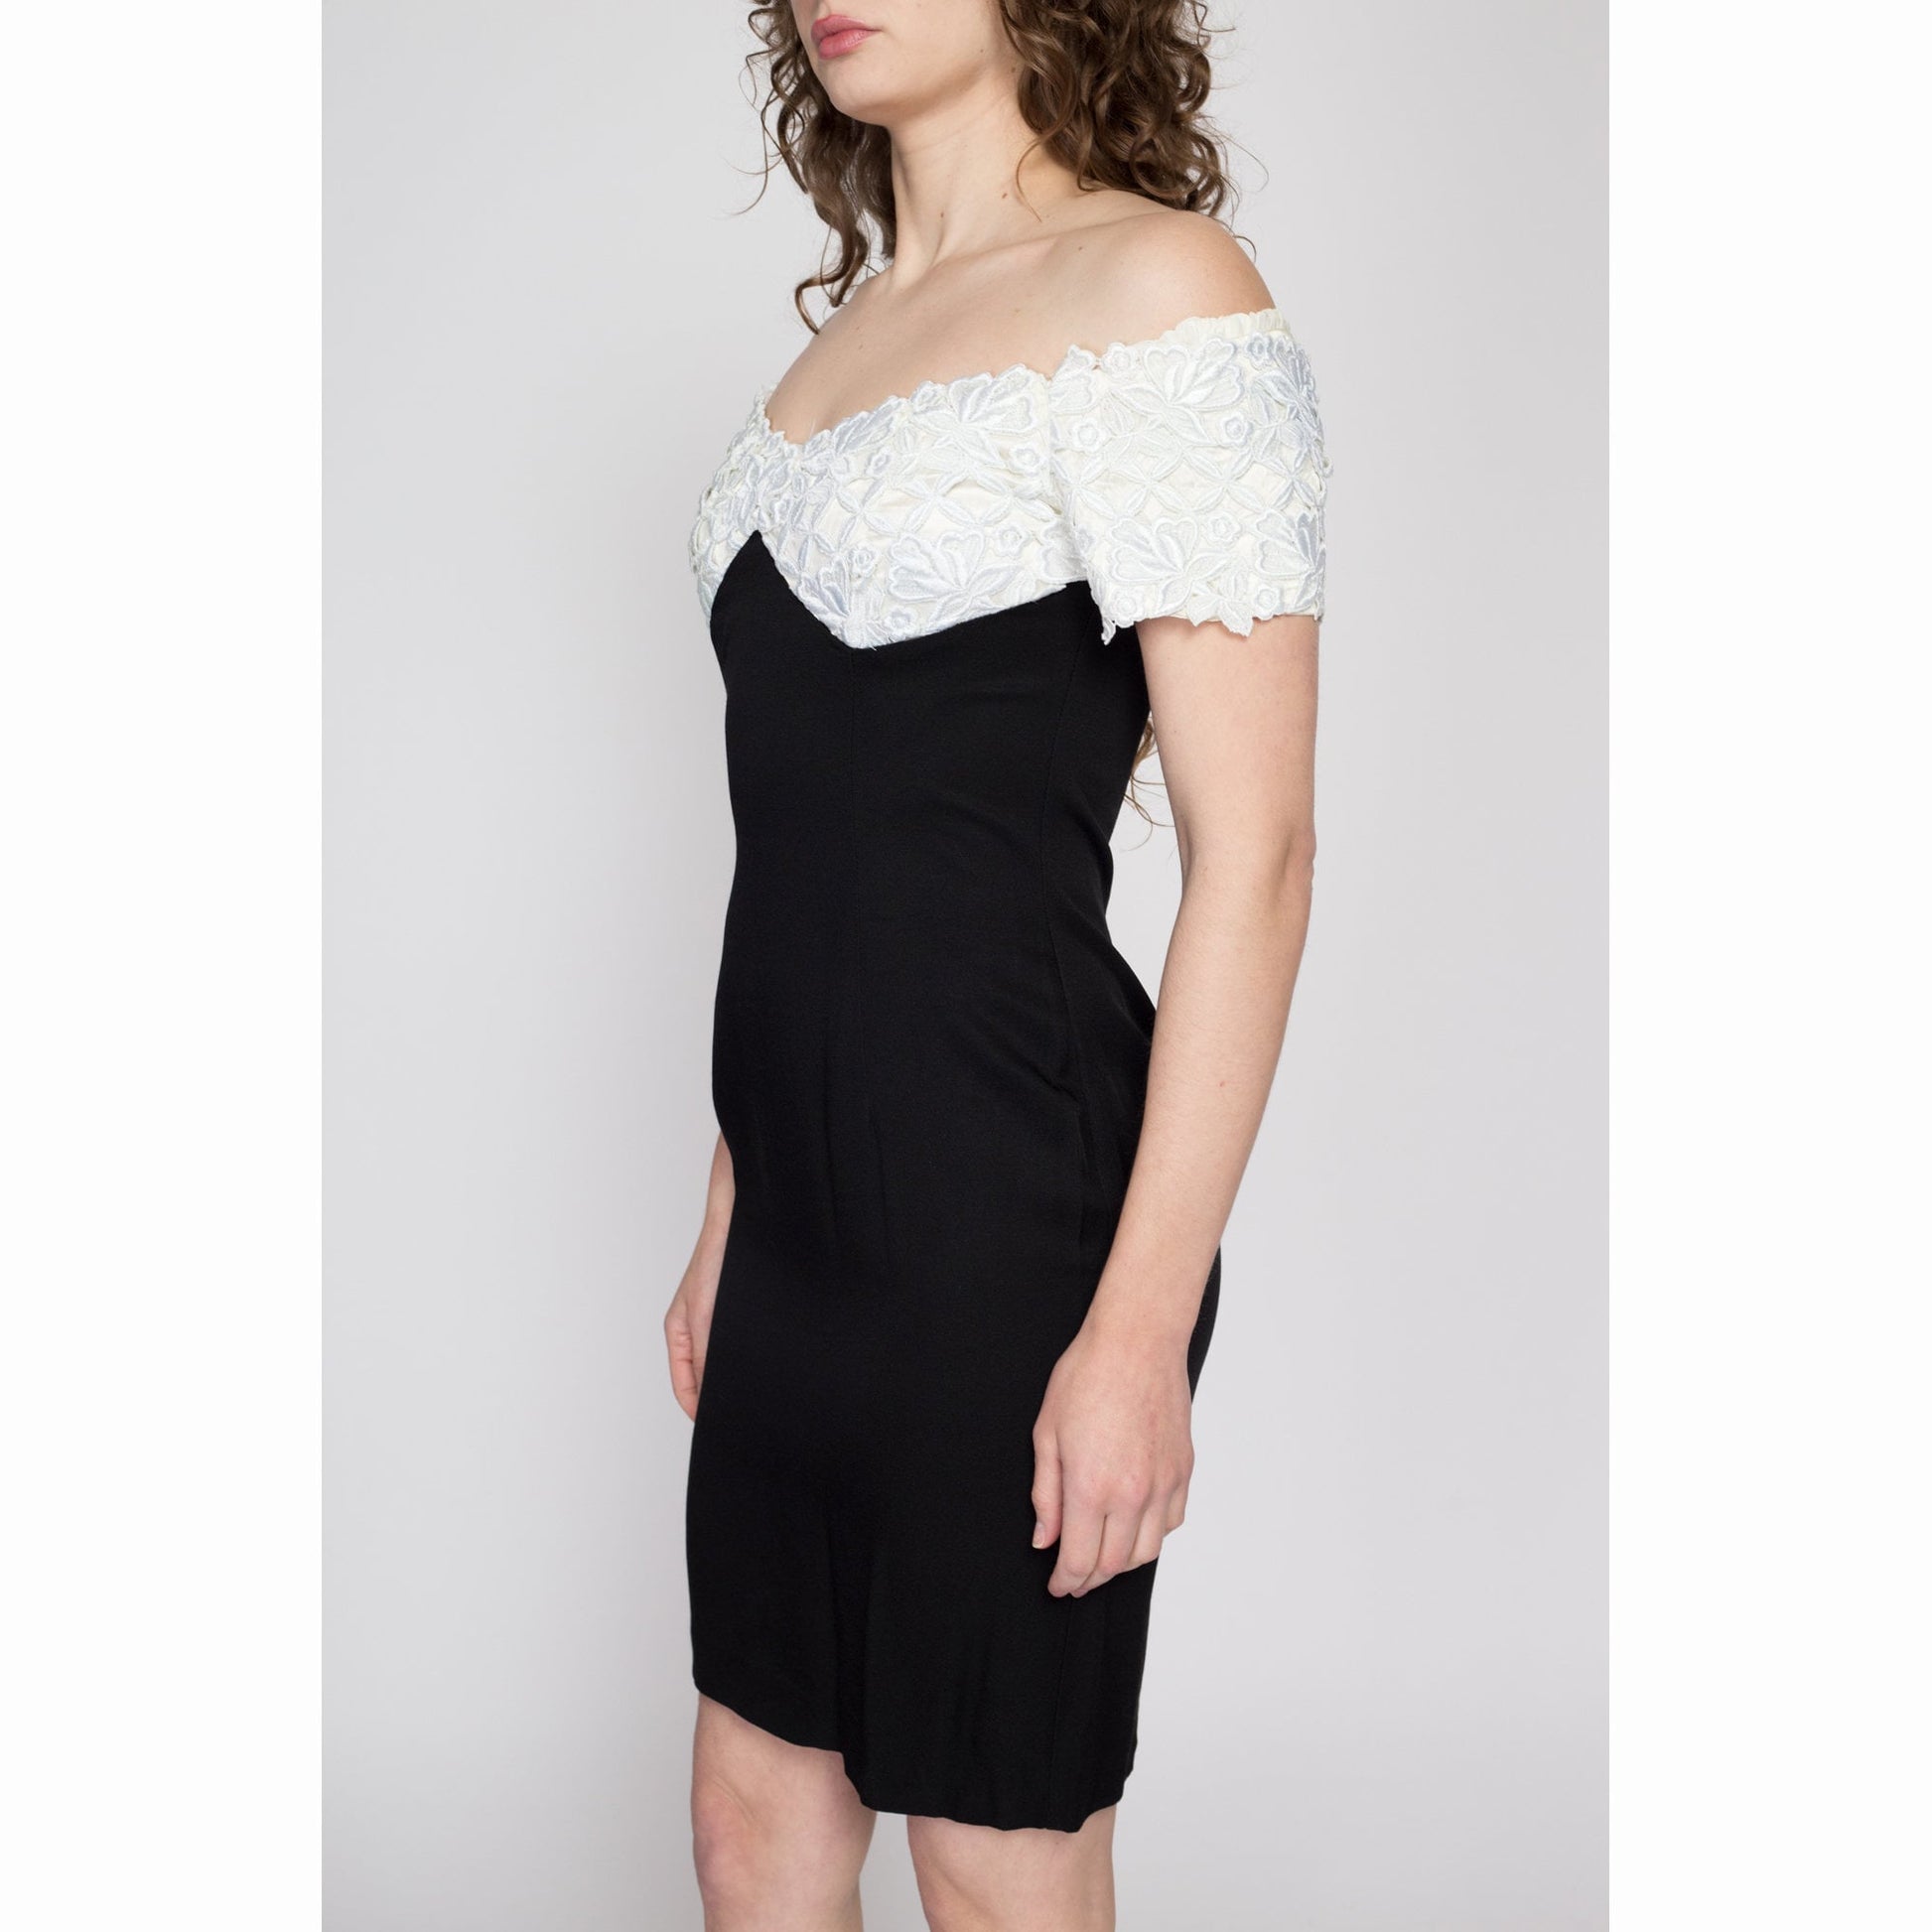 Medium 80s Scott McClintock Black & White Party Dress | Vintage Off Shoulder Sweetheart Neck Lace Trim Mini Dress